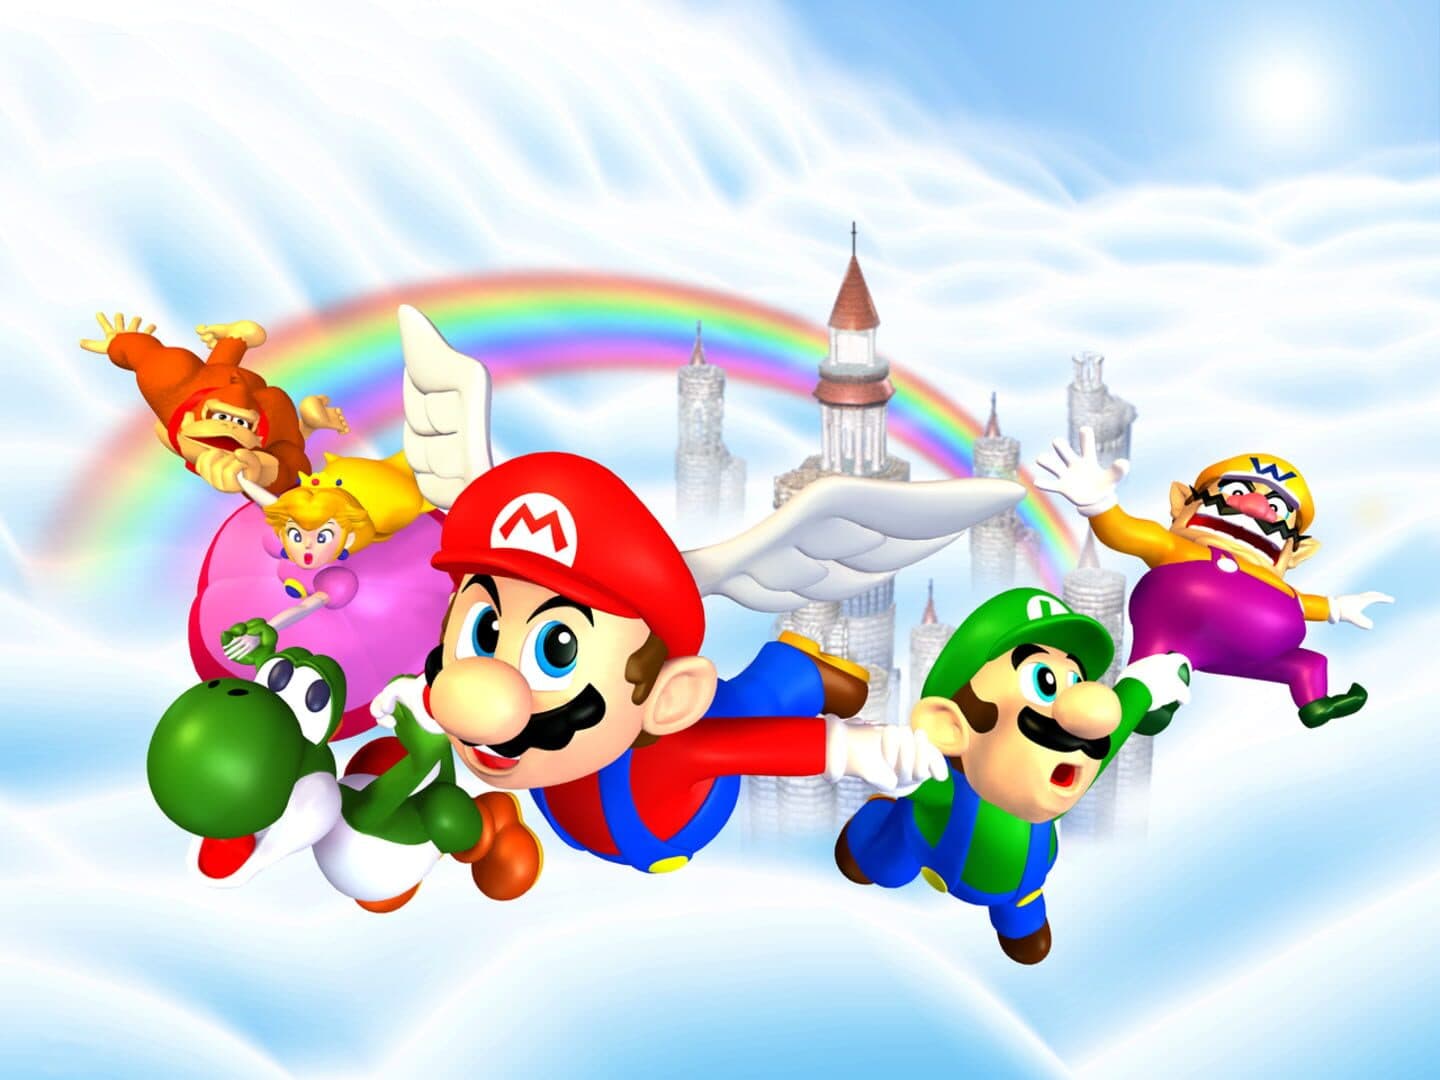 Mario Party Image